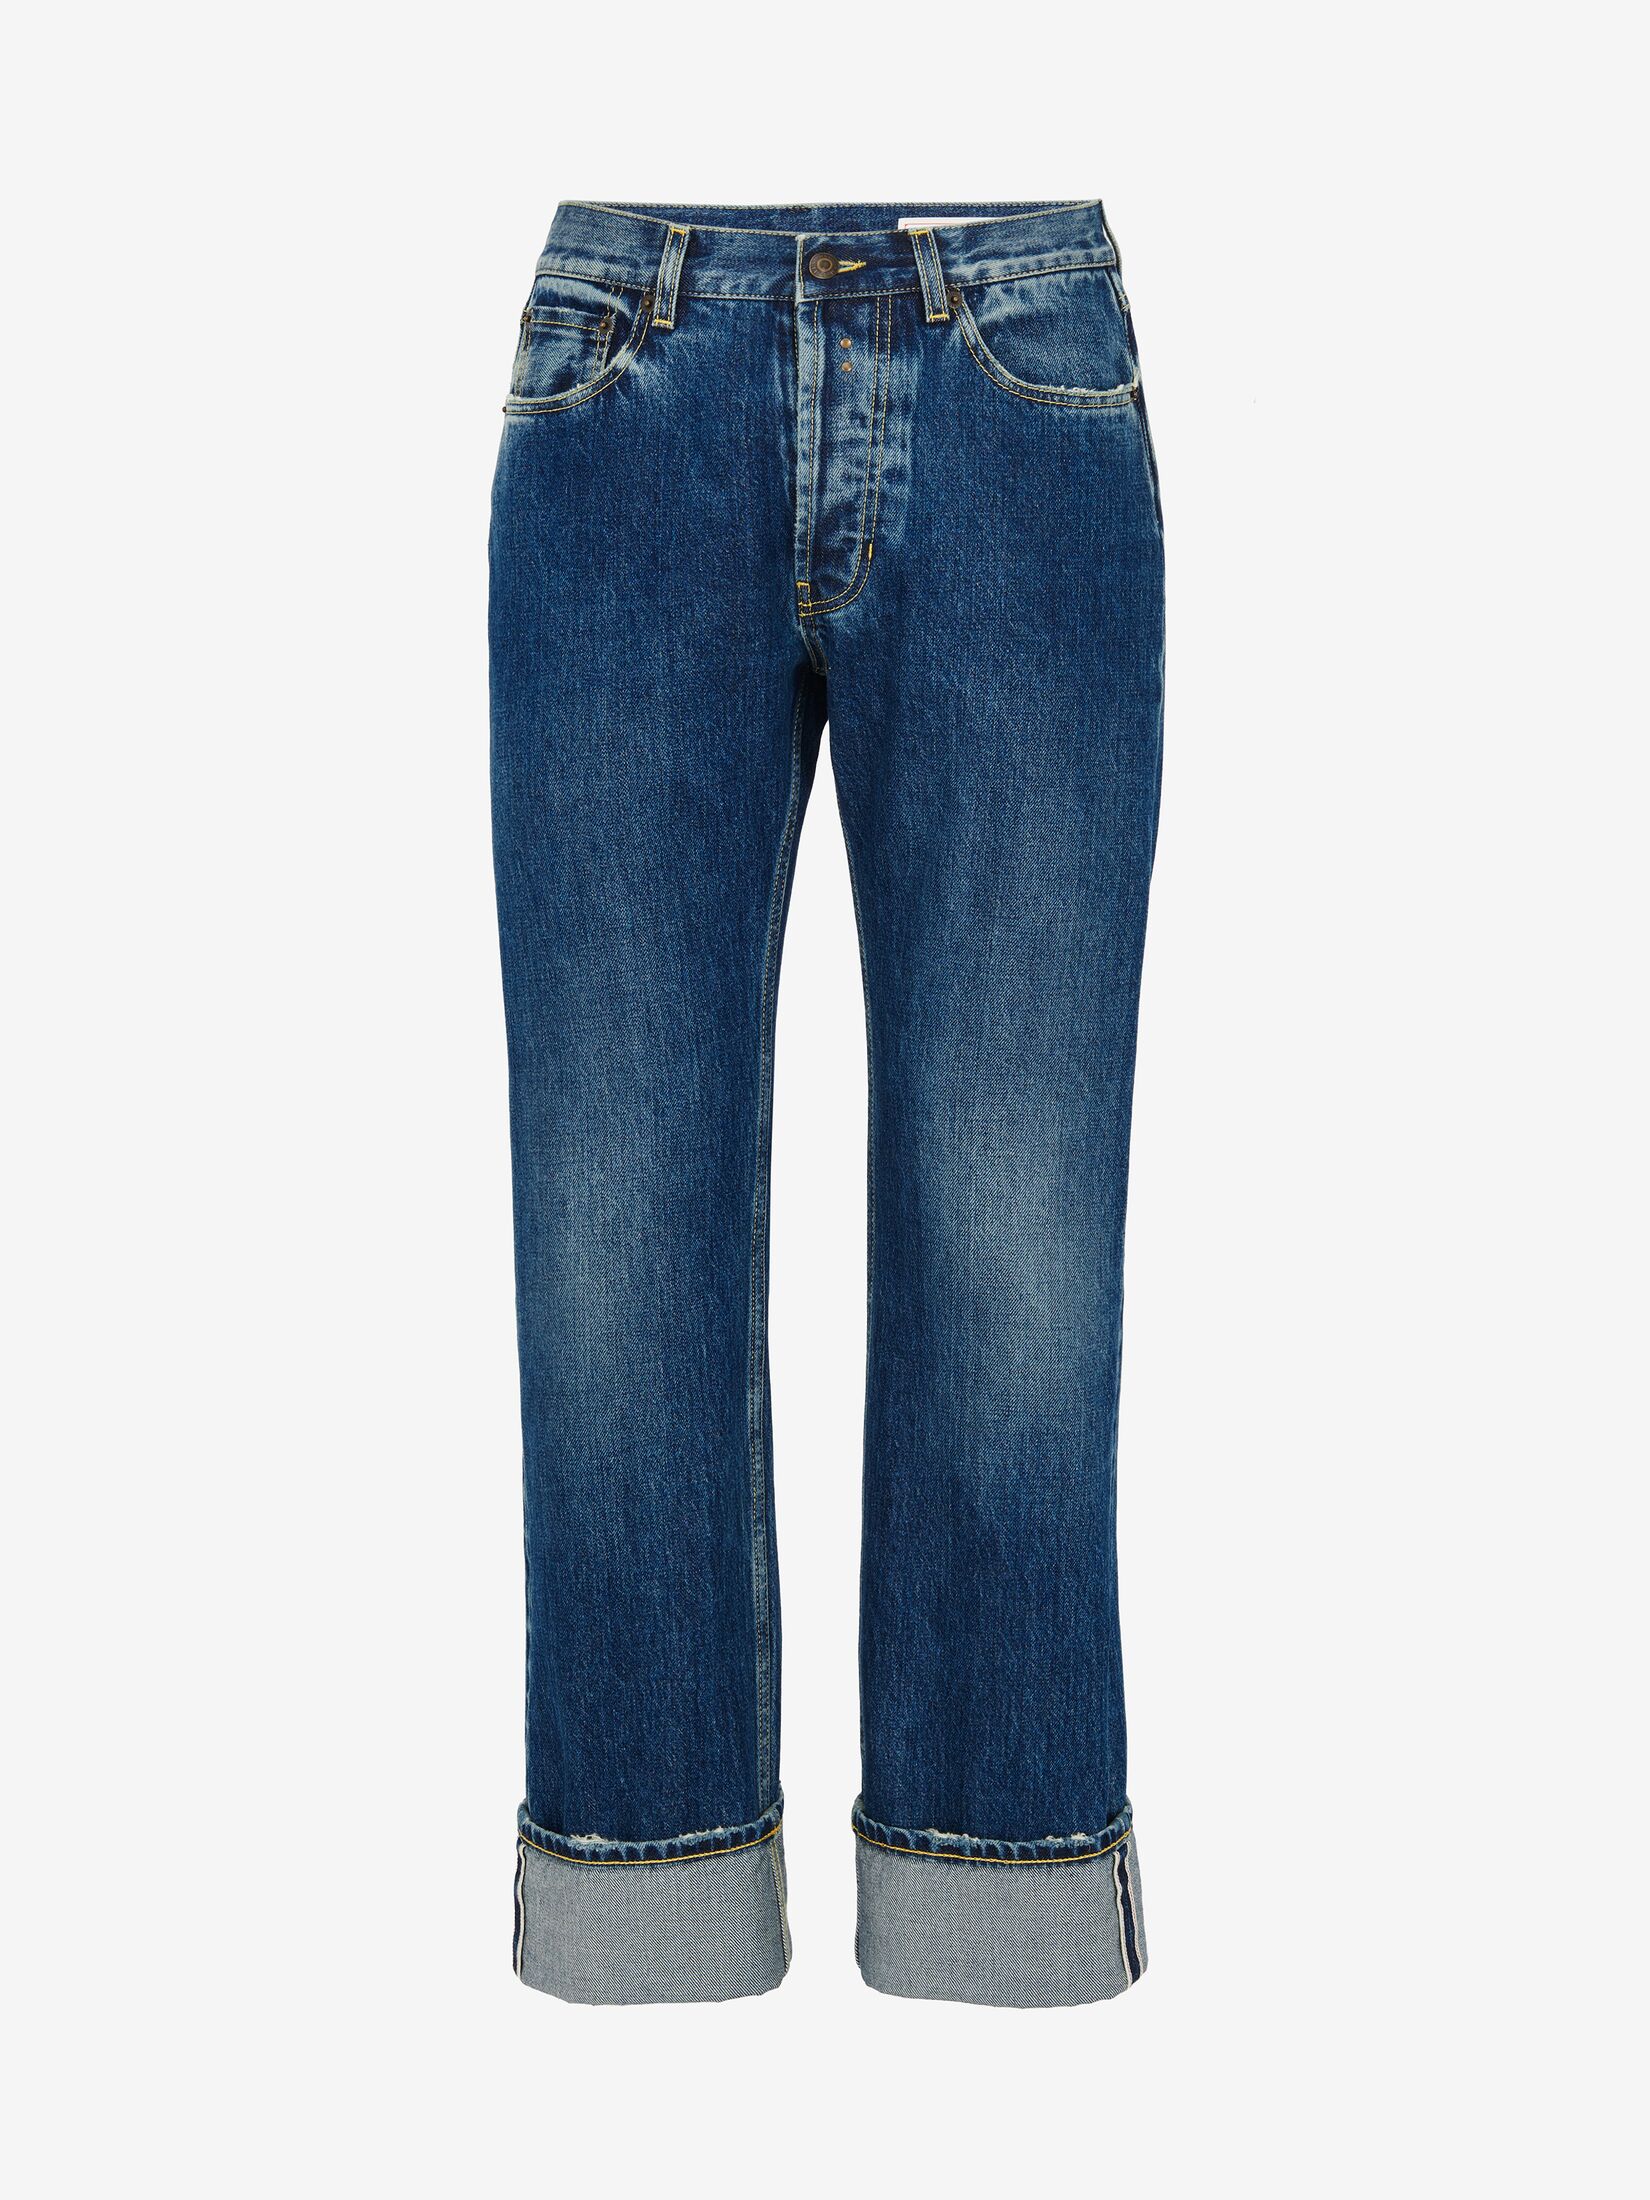 Men's Designer Denim, Jeans & Jackets